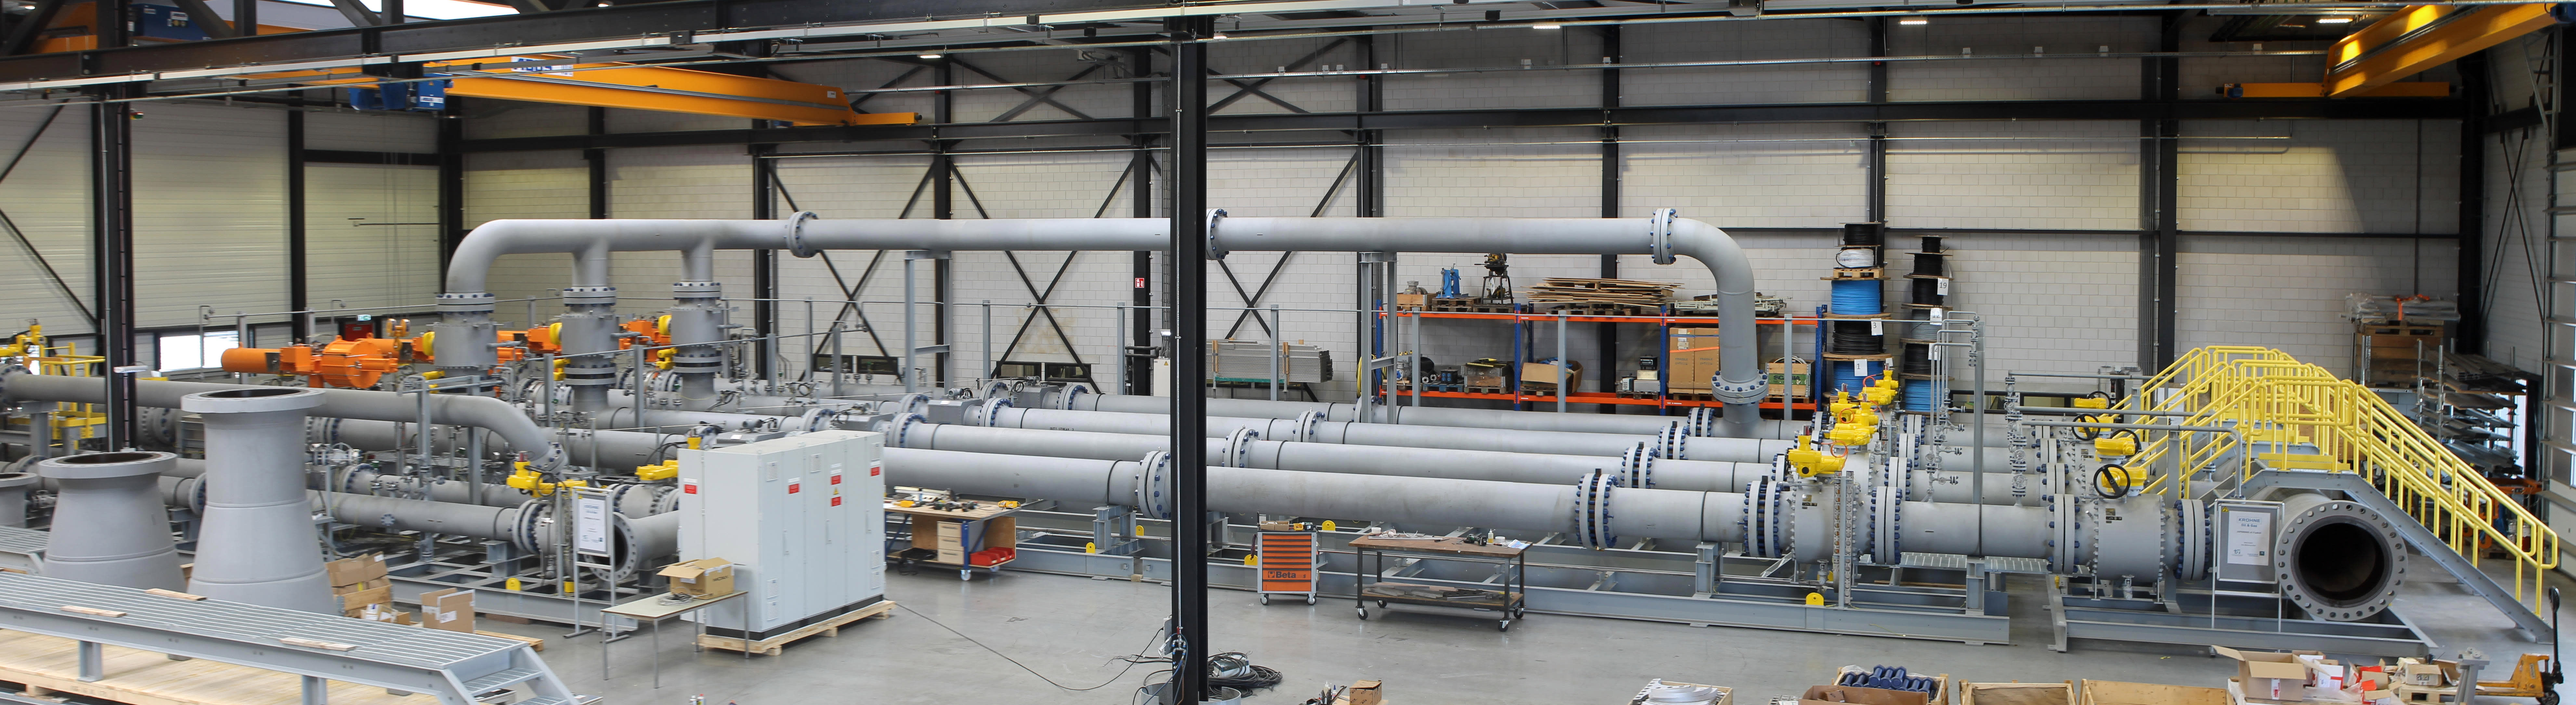 Sistema de medida de transferencia de custodia de gas natural en una fábrica KROHNE